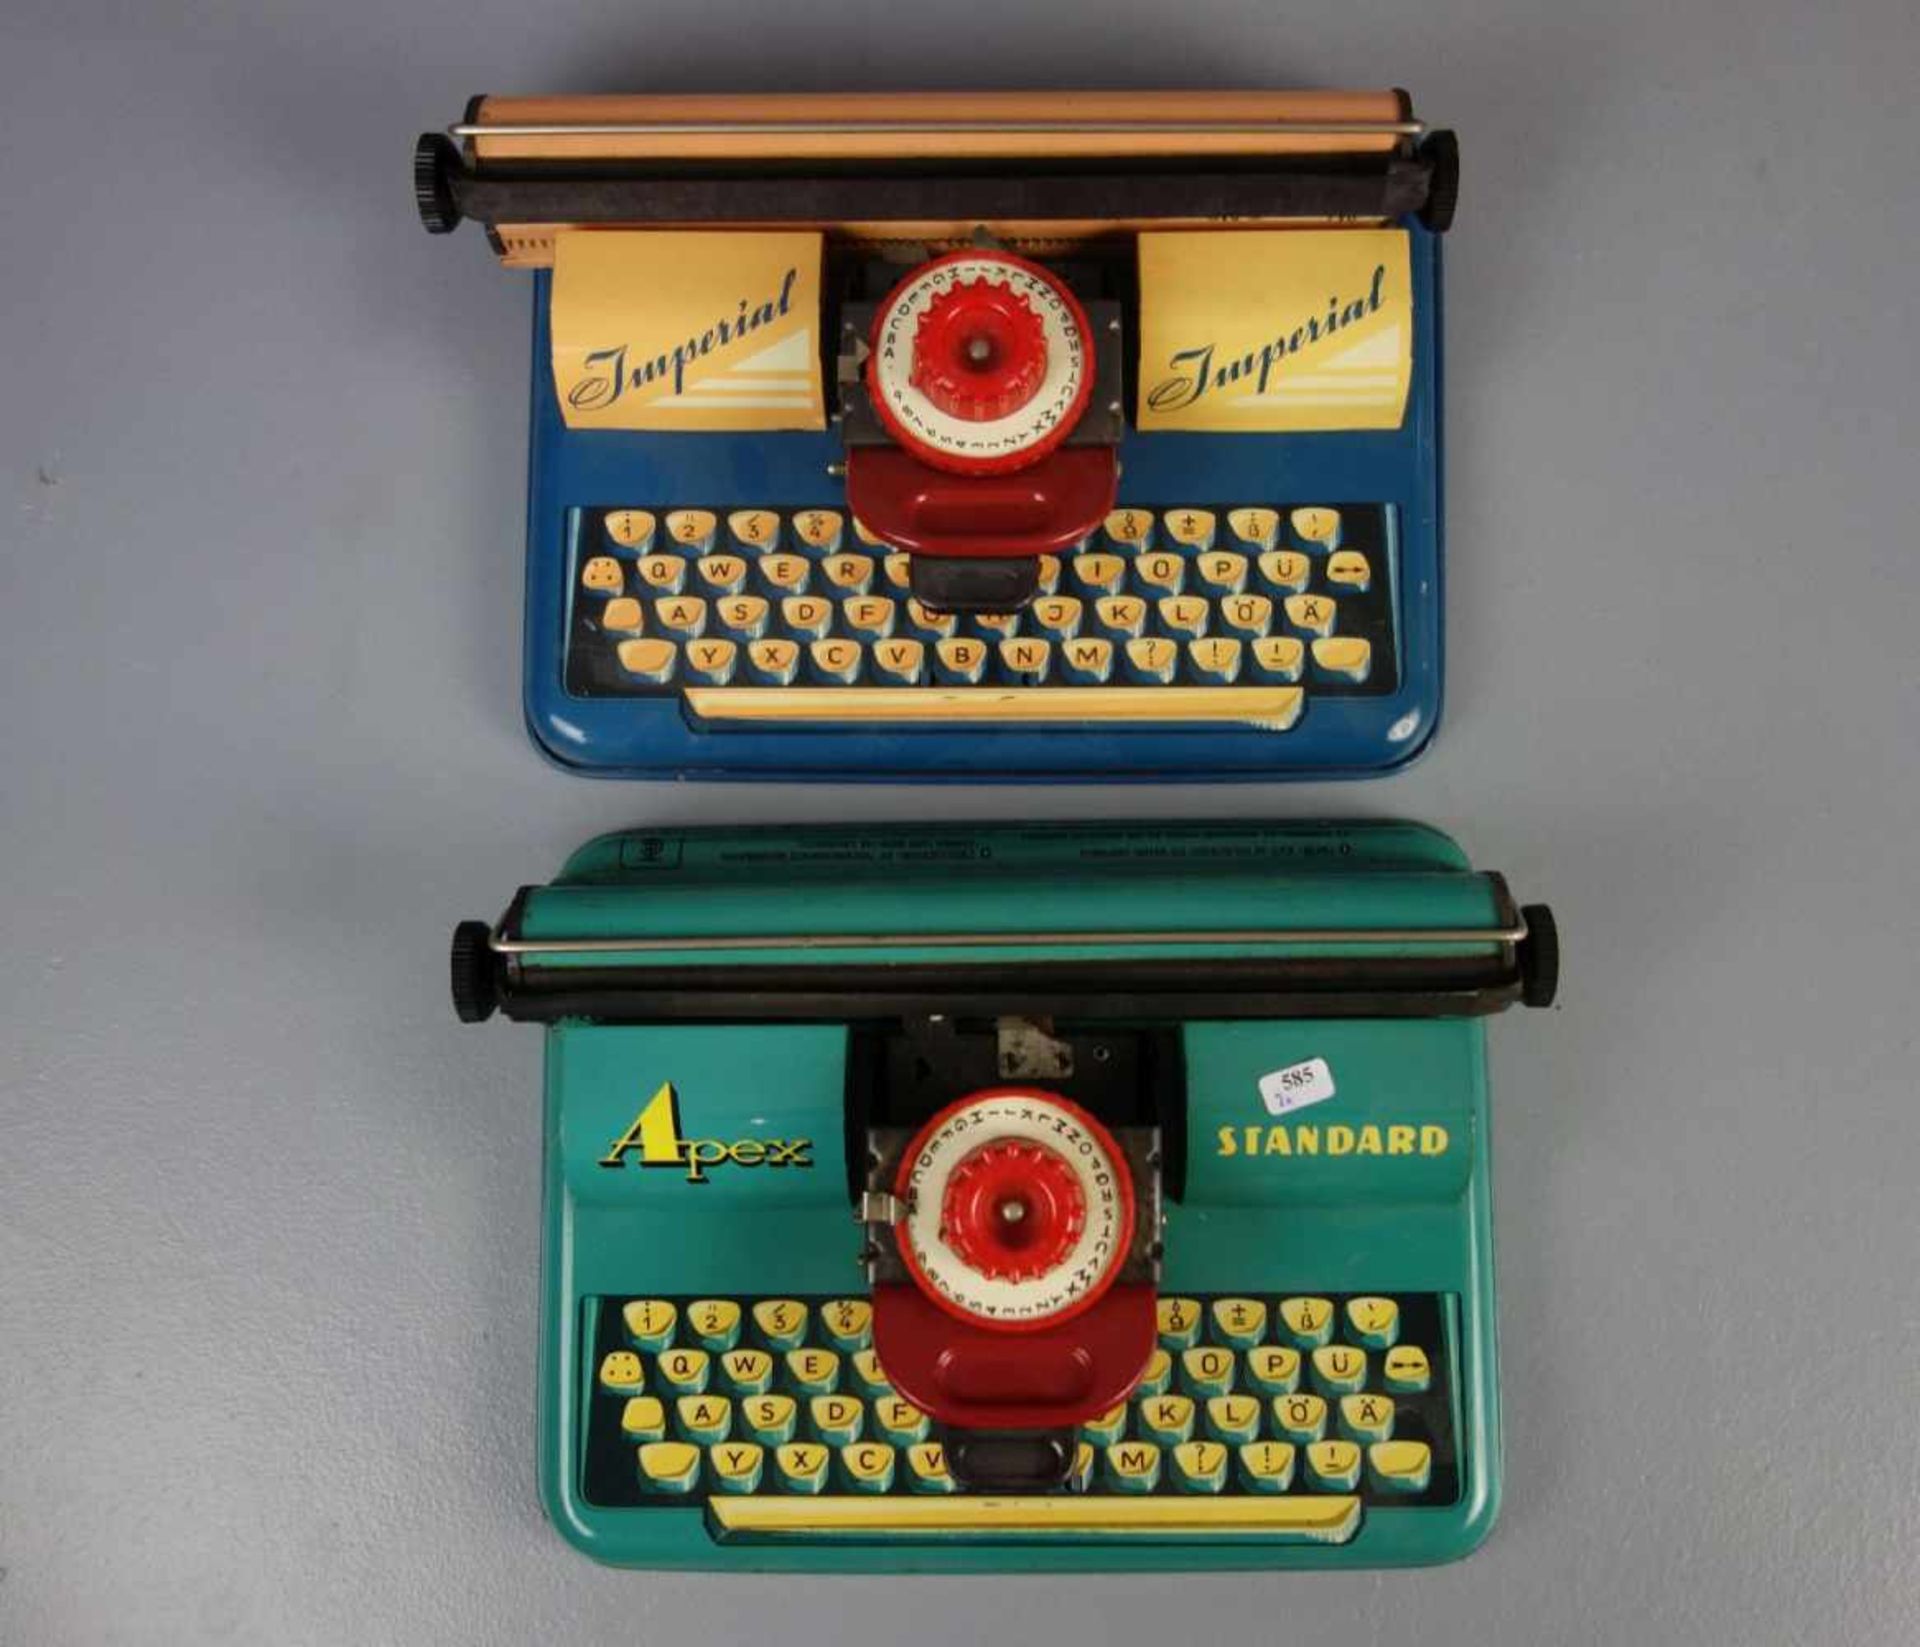 SPIELZEUG / BLECHSPIELZEUG: 2 Kinder-Schreibmaschinen / two toy type writers, Blech, polychrom - Bild 2 aus 4